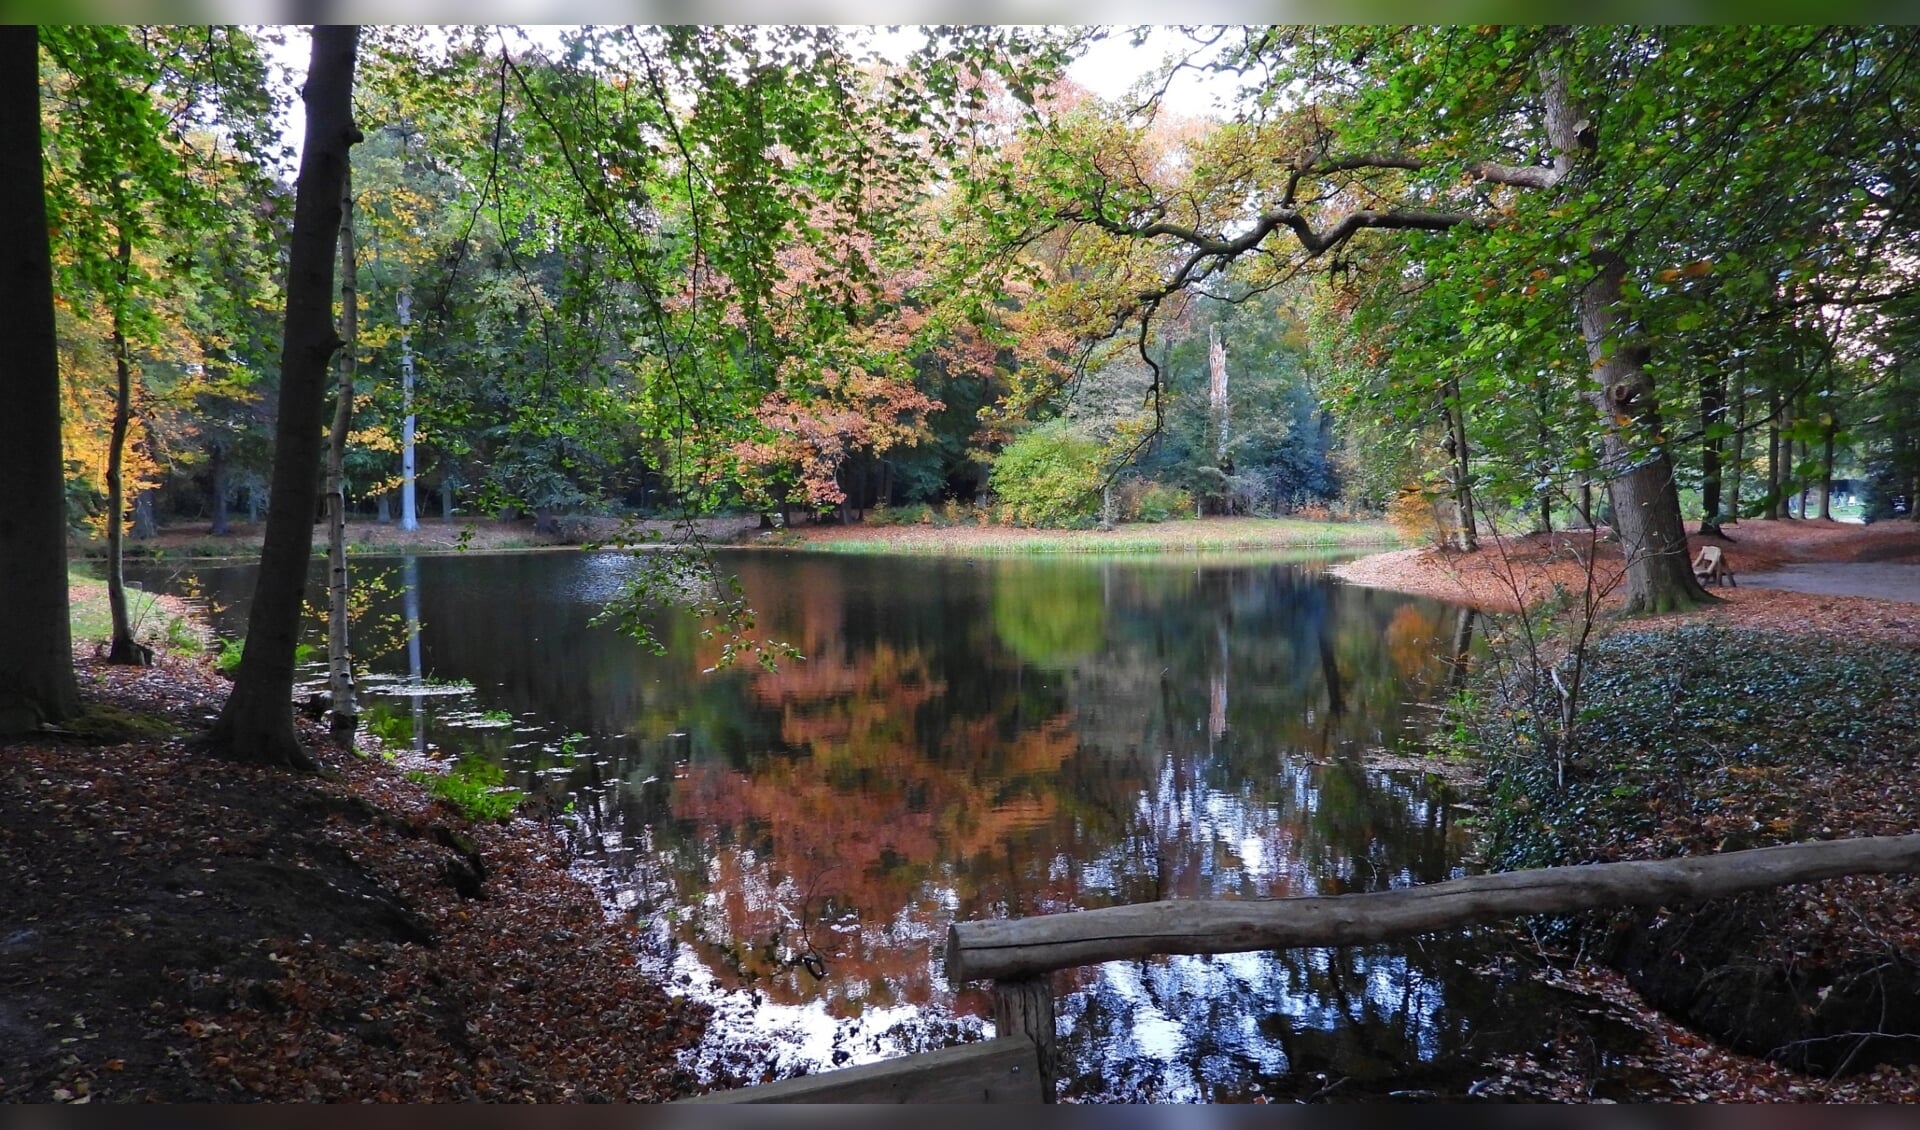 Vijver met herfstkleuren in kasteelpark Renswoude.